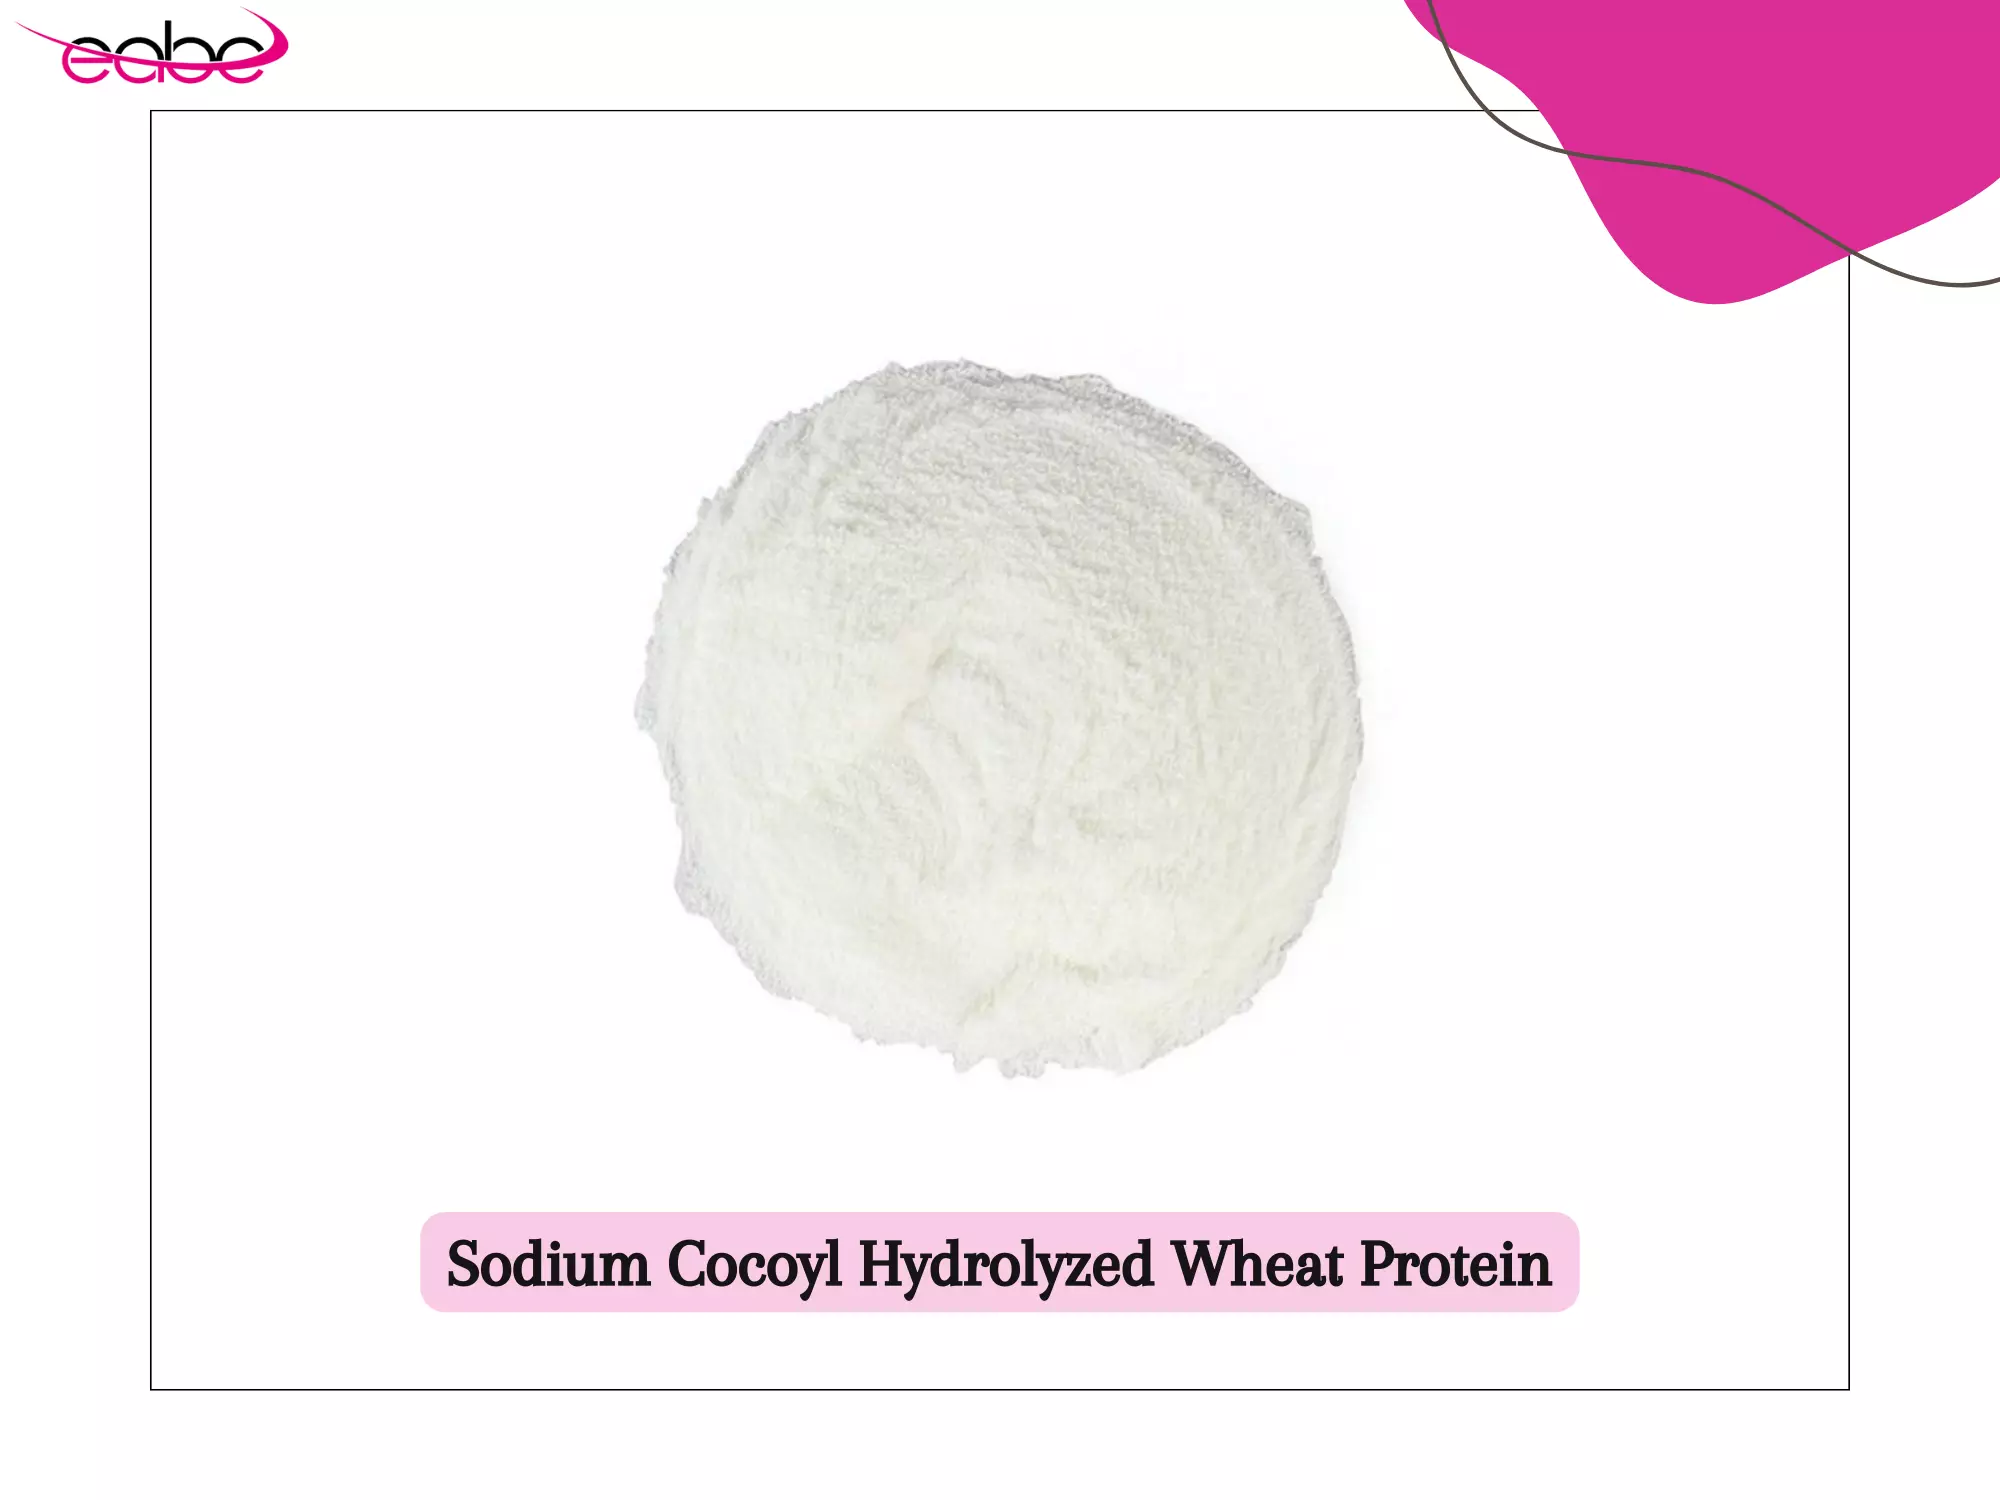 Sodium Cocoyl Hydrolyzed Wheat Protein